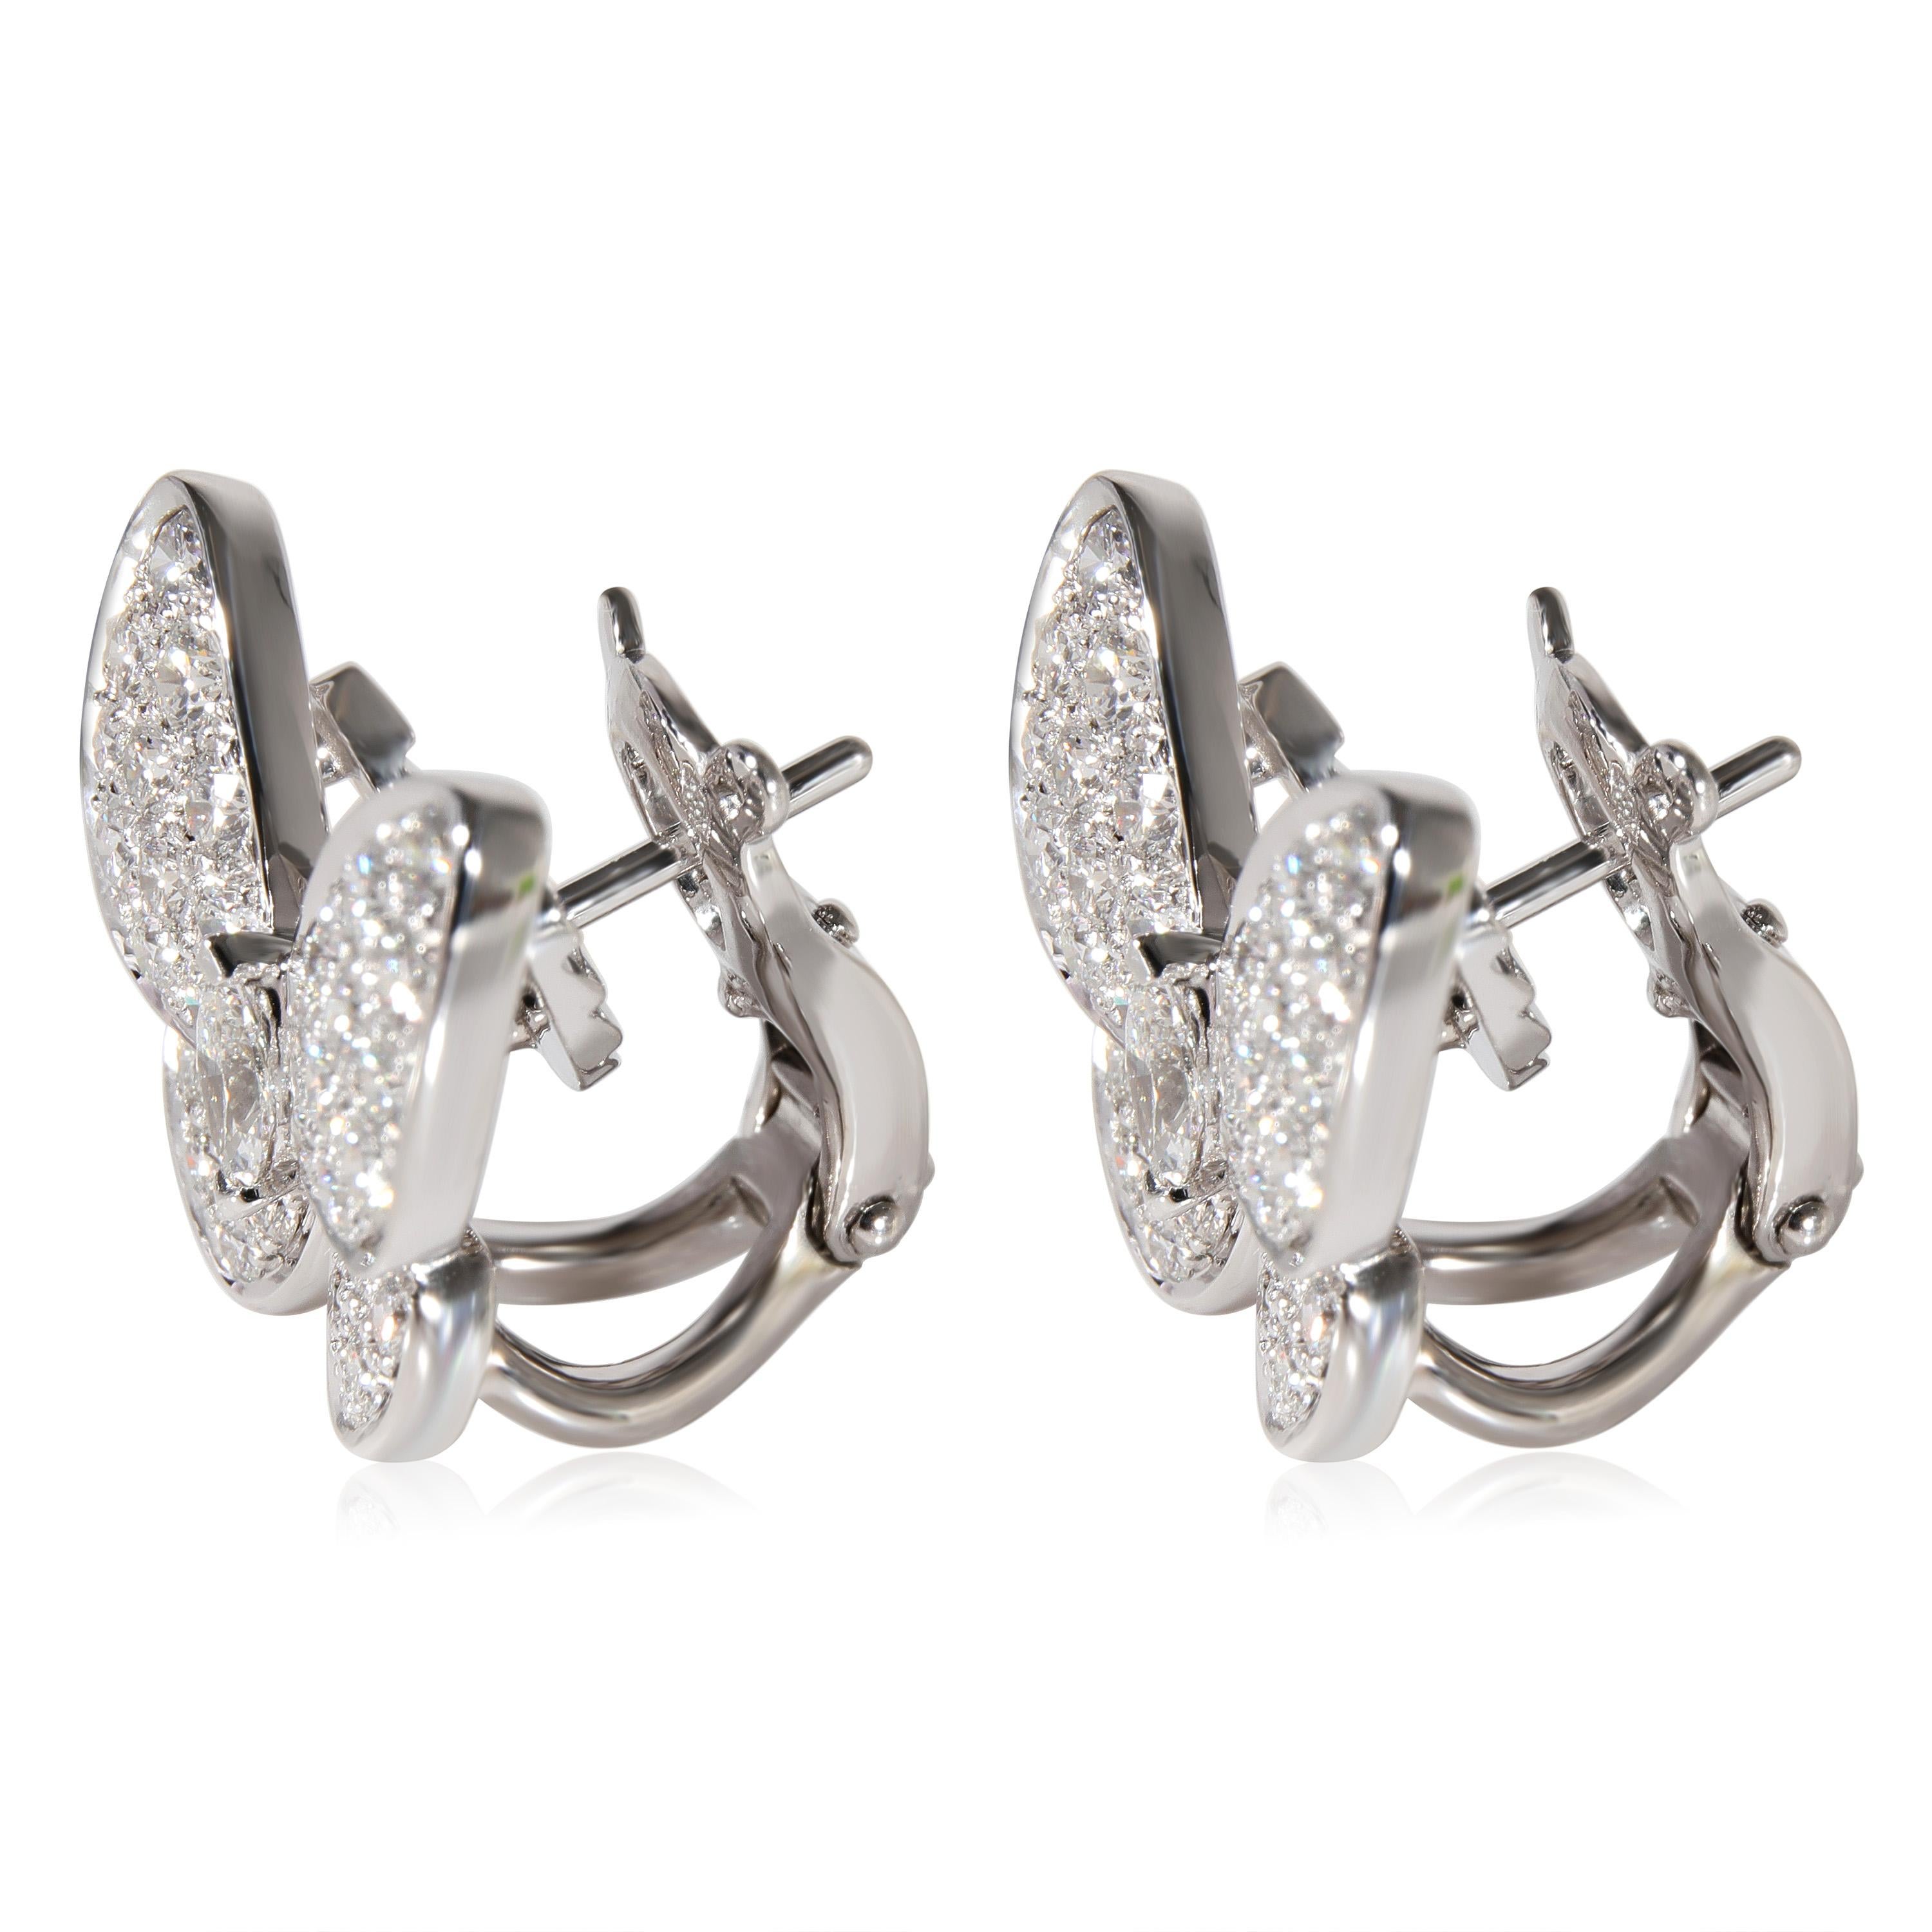 Women's Van Cleef & Arpels Two Butterfly Diamond Earrings in 18k White Gold 1.67 CTW